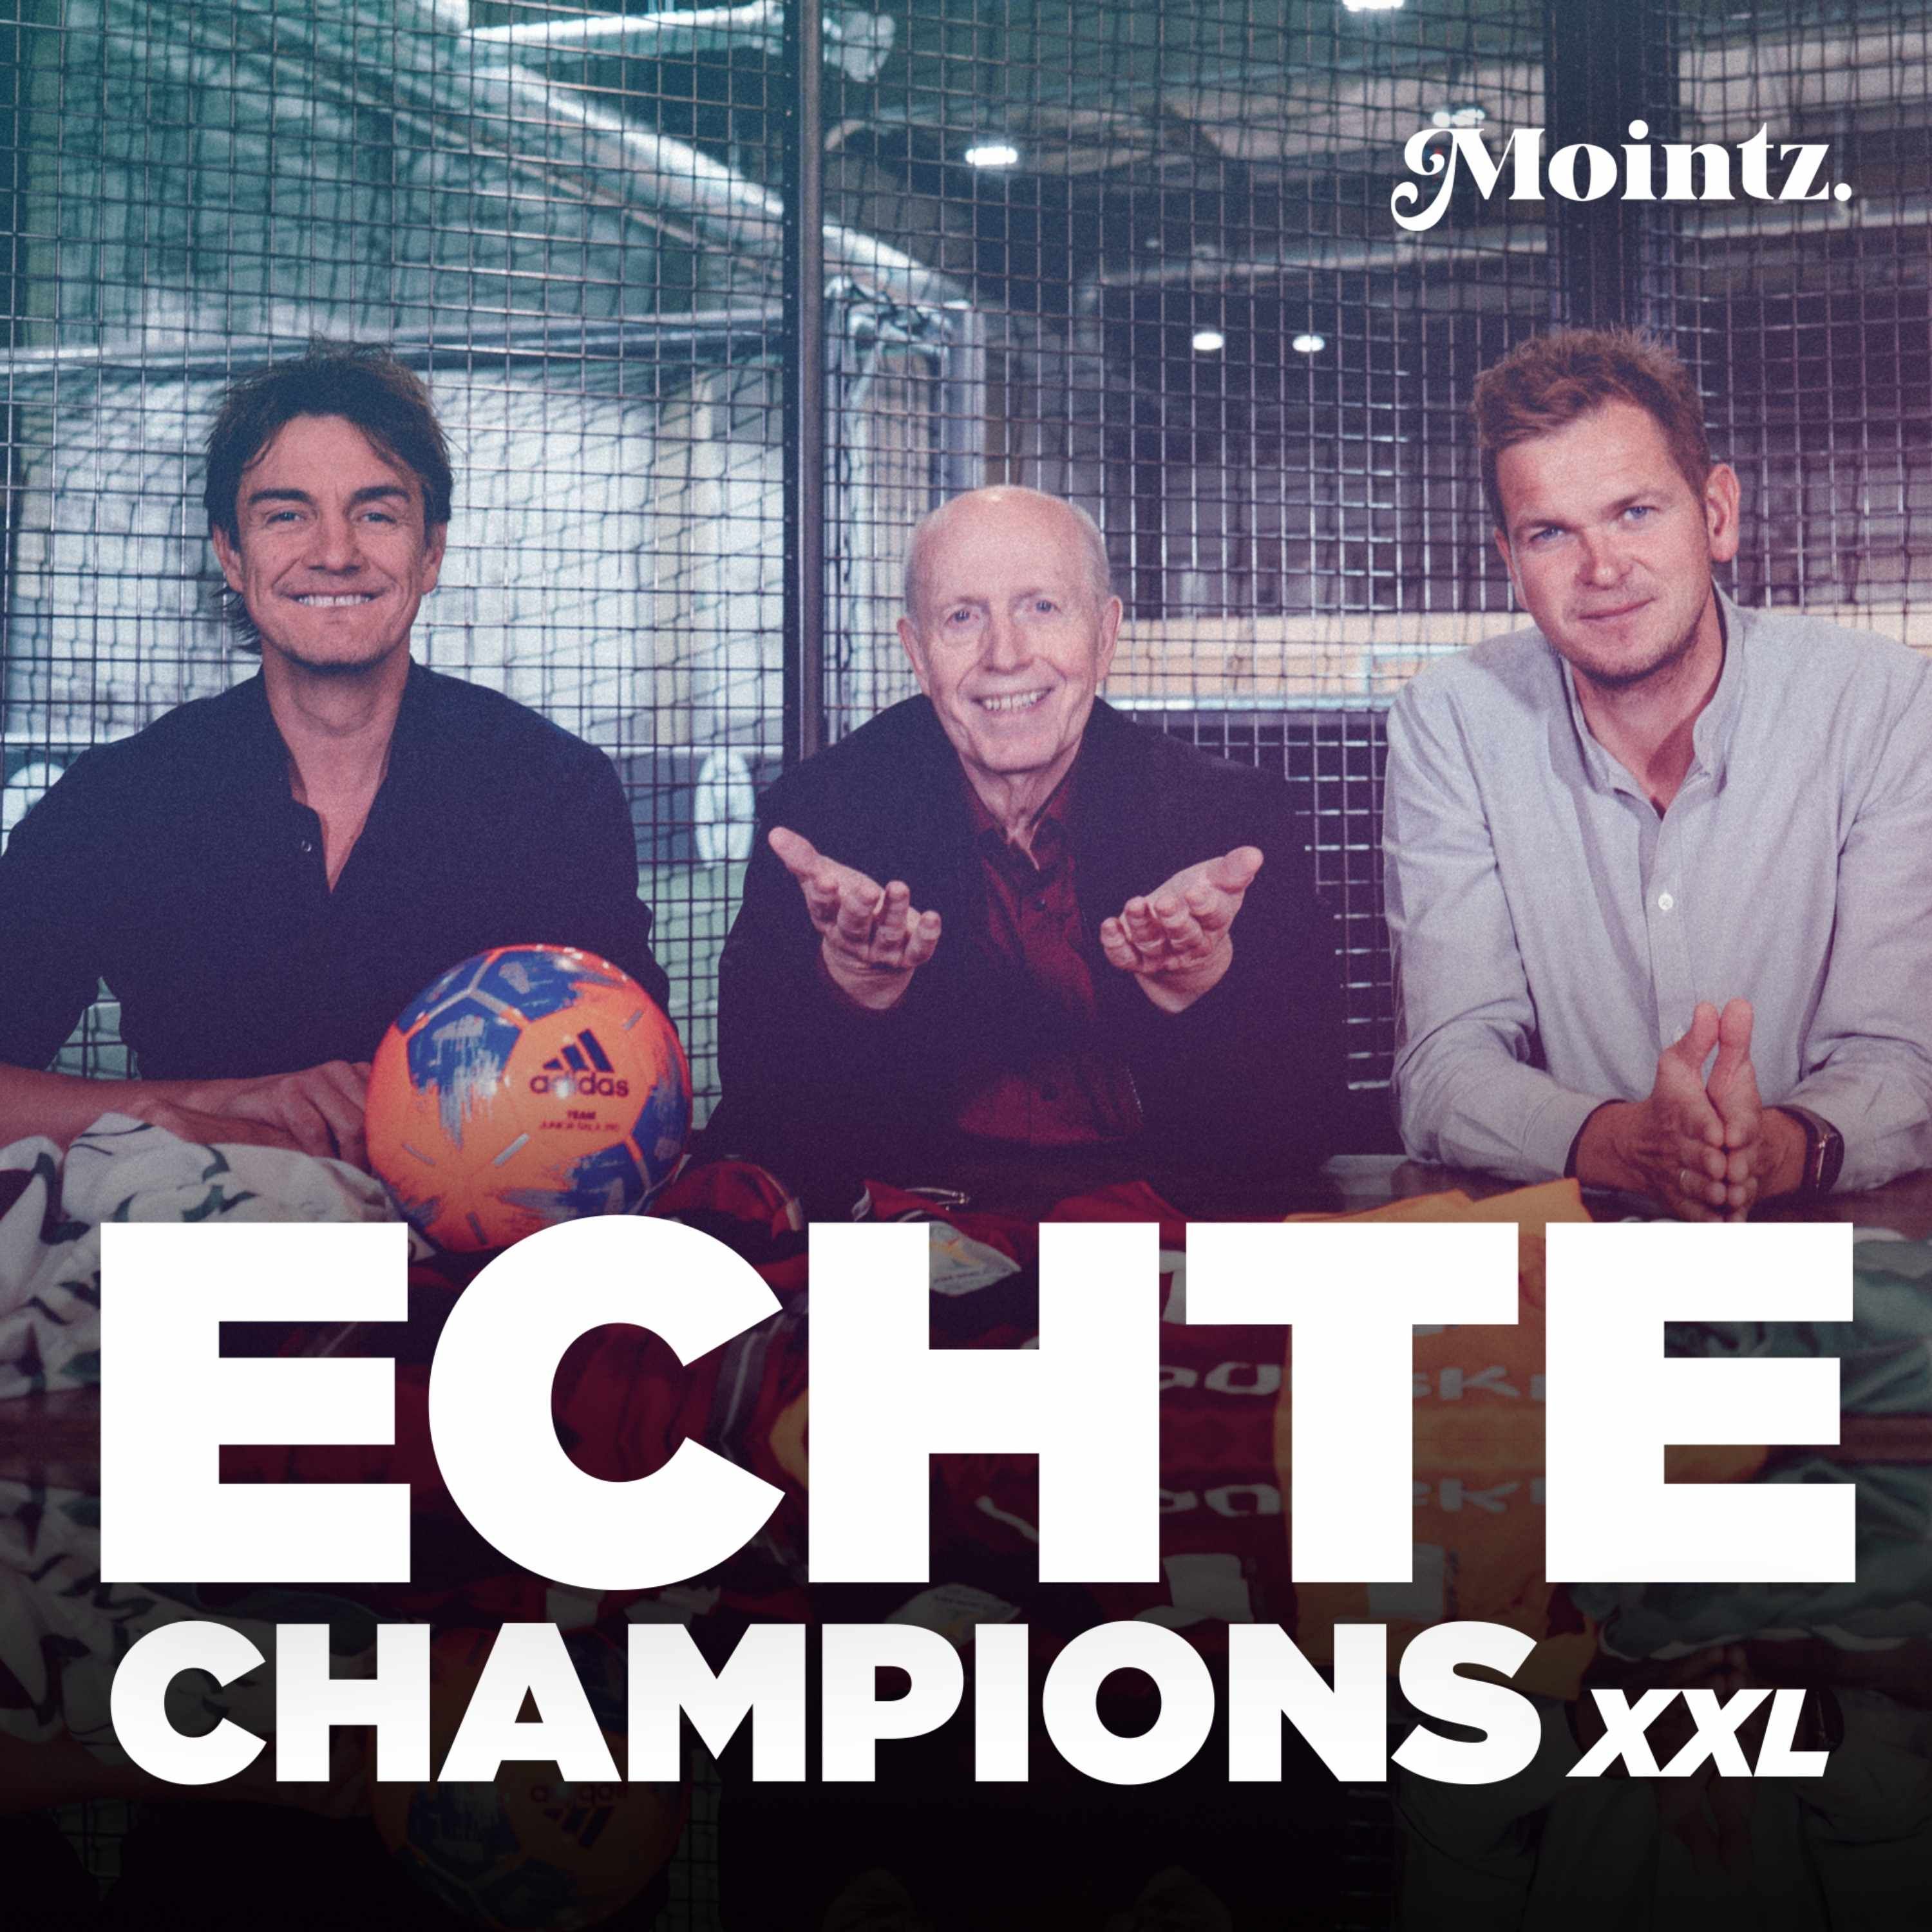 Echte Champions XXL - Die Mointz